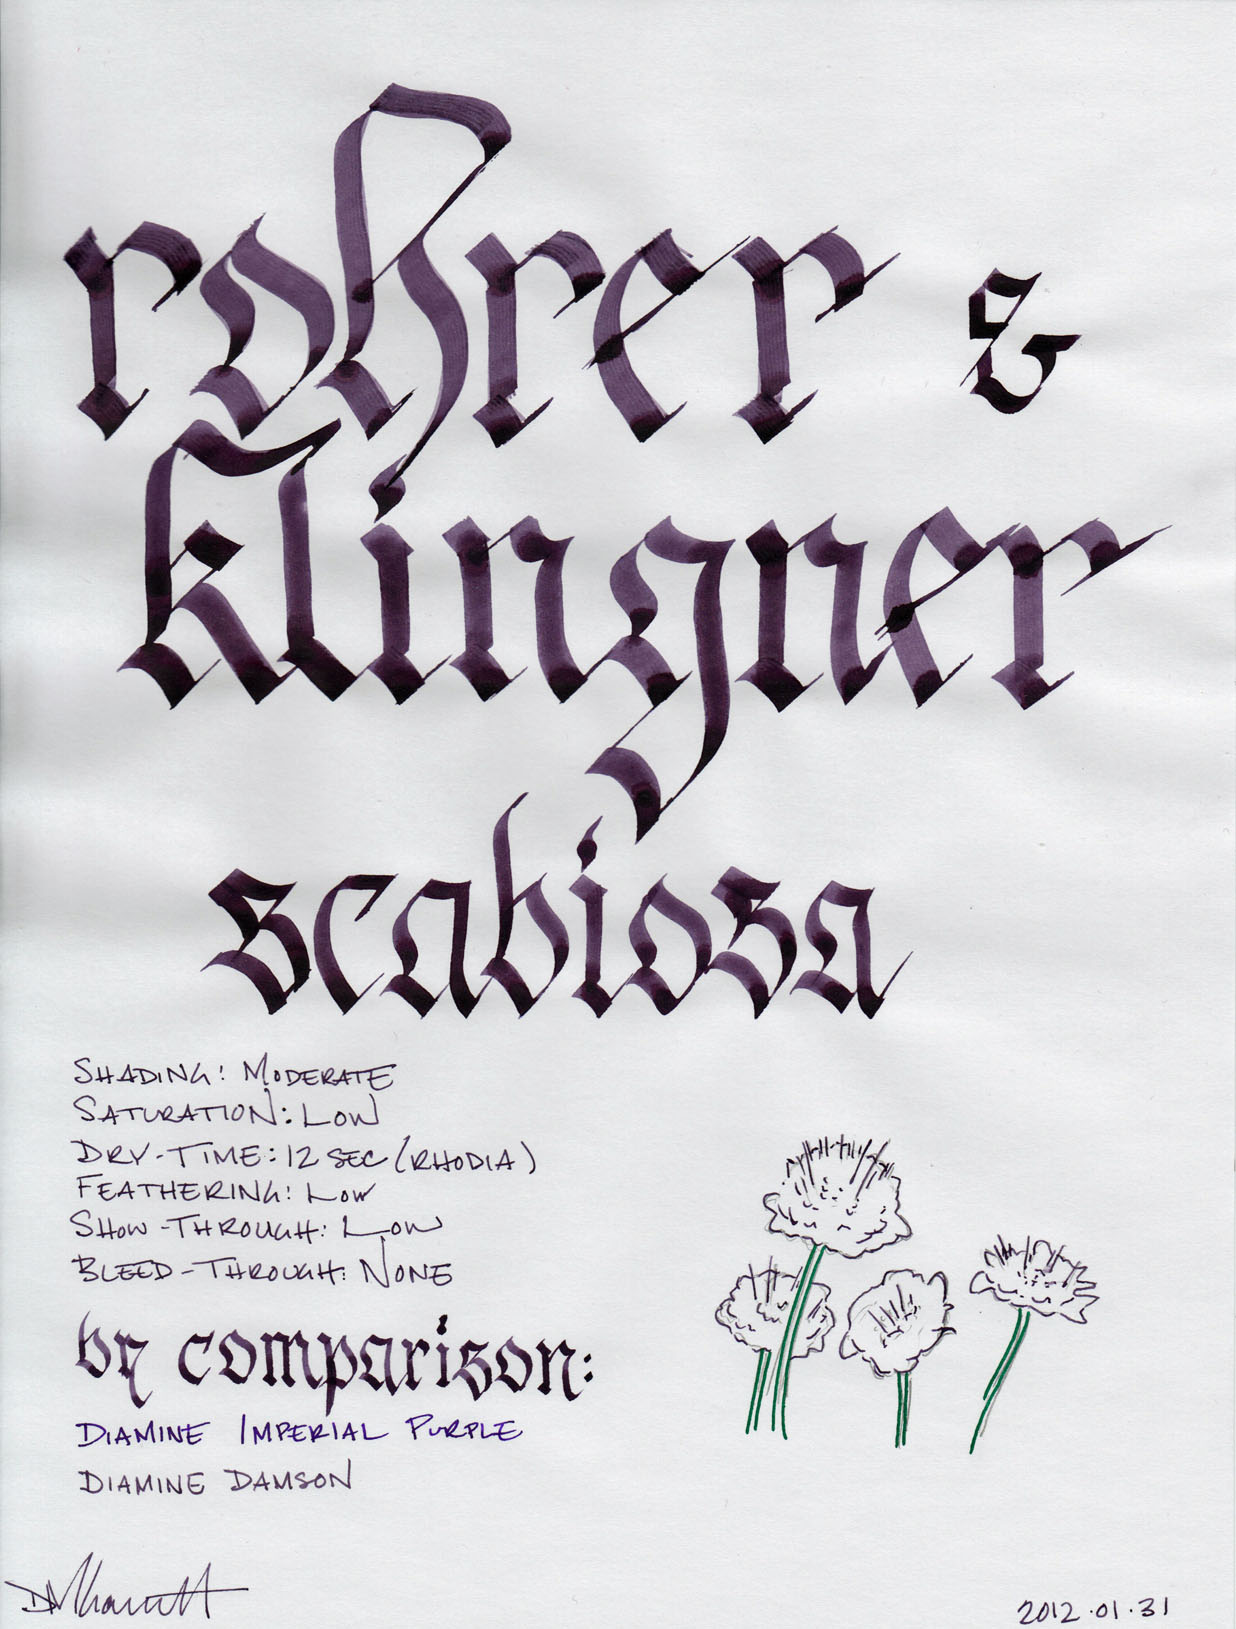 rohrer and klingner scabiosa